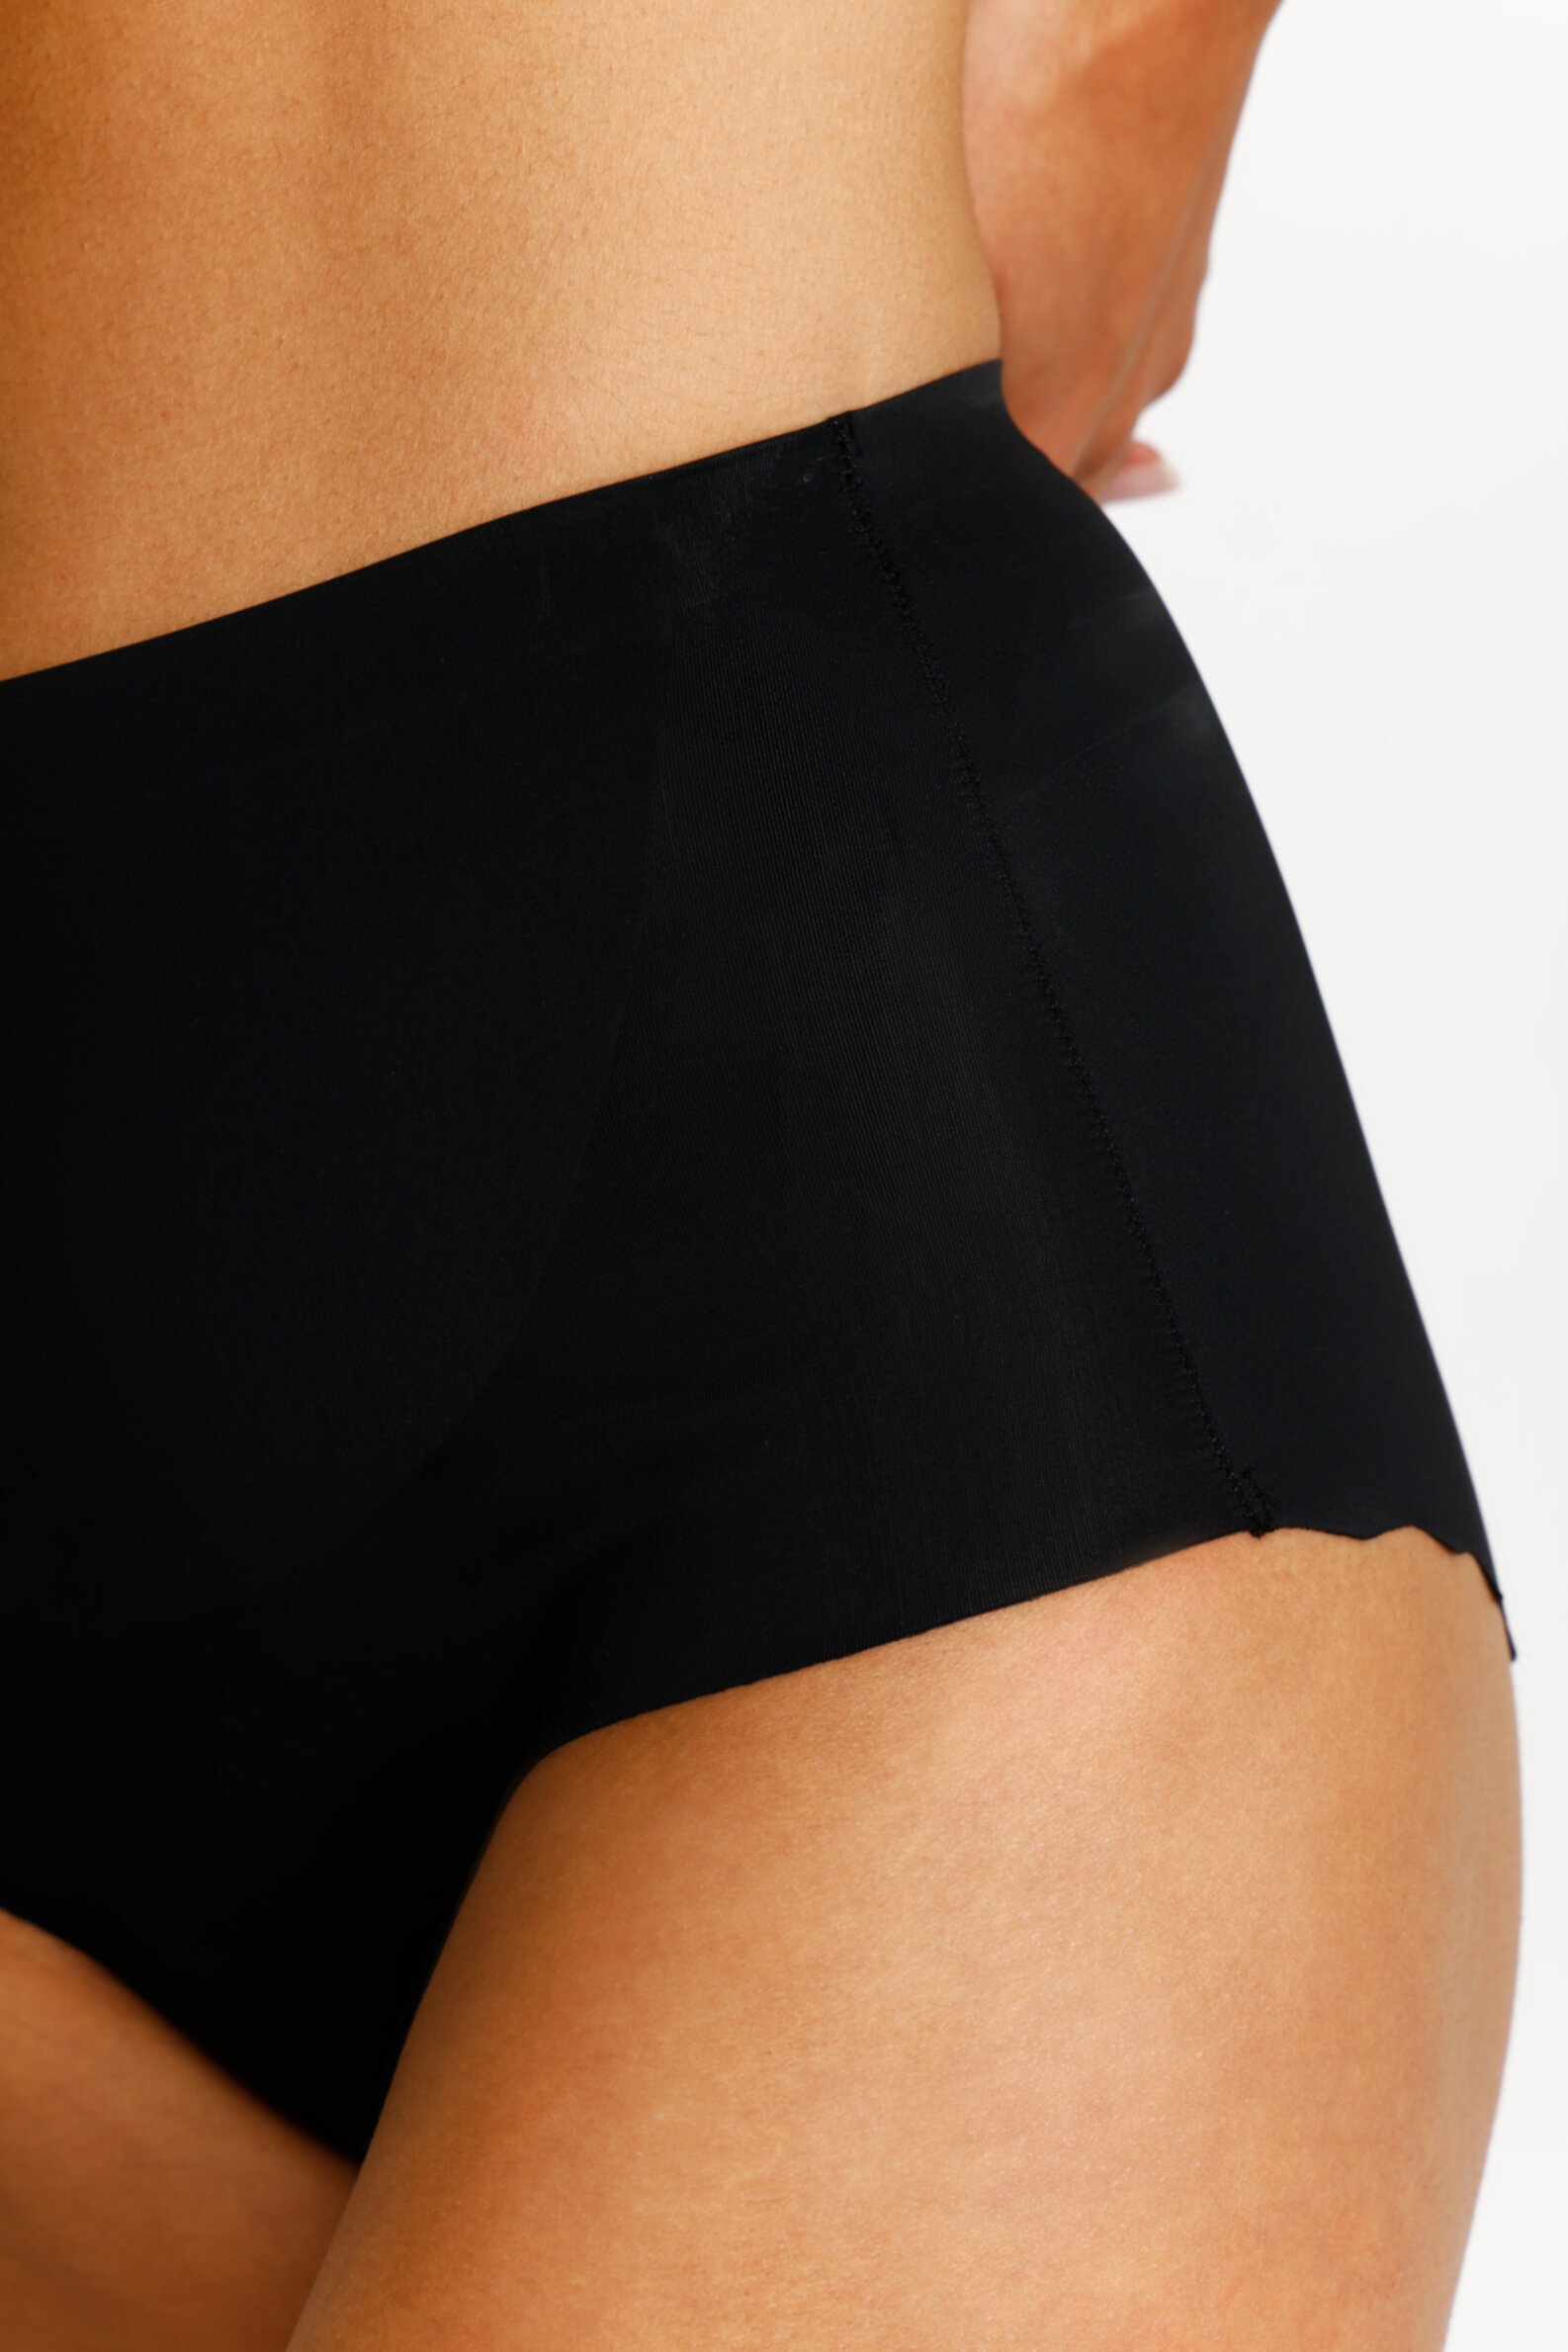 High waist microfibre shaper briefs - Underwear - UNDERWEAR